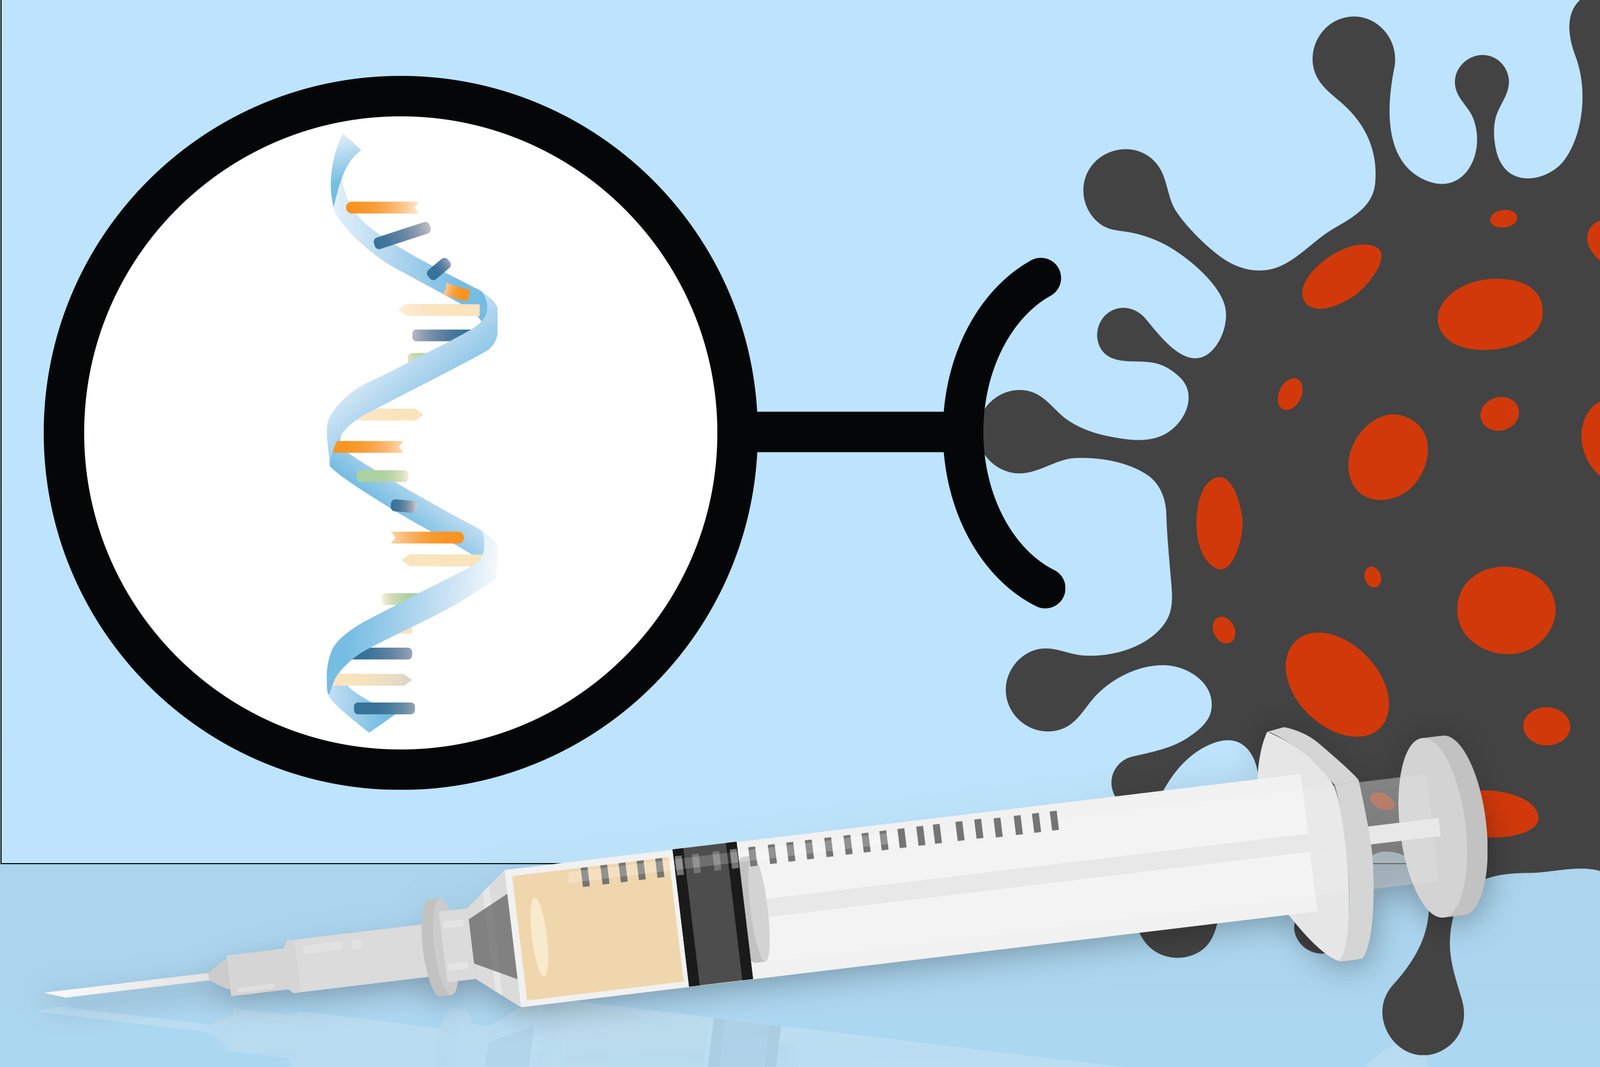 Las vacunas fabricadas con esta tecnología usan solo un fragmento de ARN. • Imagen: MIT News.